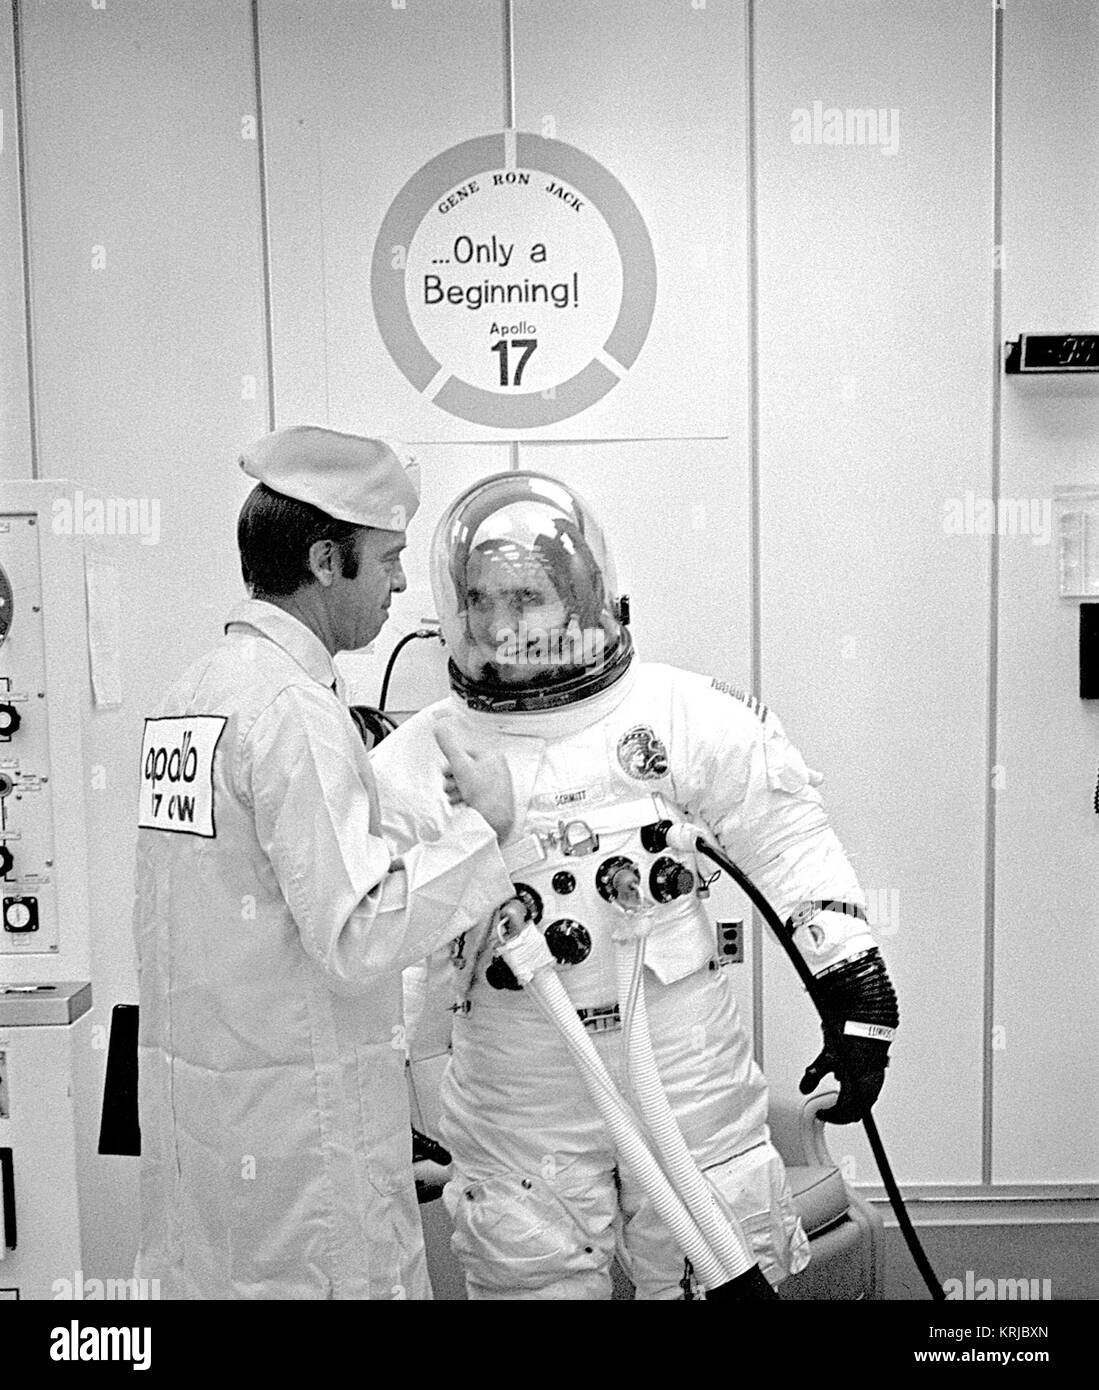 Apollo 17 Lunar Module Pilot Harrison H. Schmitt teilt sich einen Moment der Entspannung mit Astronaut Alan Shepard während prelaunch passende Operationen. Schmitt wird der Mond-Taurus-Littrow-Region mit Mission Kommandant Eugene A. Cernan während der Mission der NASA sechste und letzte bemannte Mondlandung erkunden. Die dritte Crewman, Ronald E. Evans, wird das Kommandomodul allein in der Mondumlaufbahn während seiner Kameraden Oberfläche Exploration pilot. Shepard und Schmitt genießen ein Licht Hearted Moment (9460227976) Stockfoto